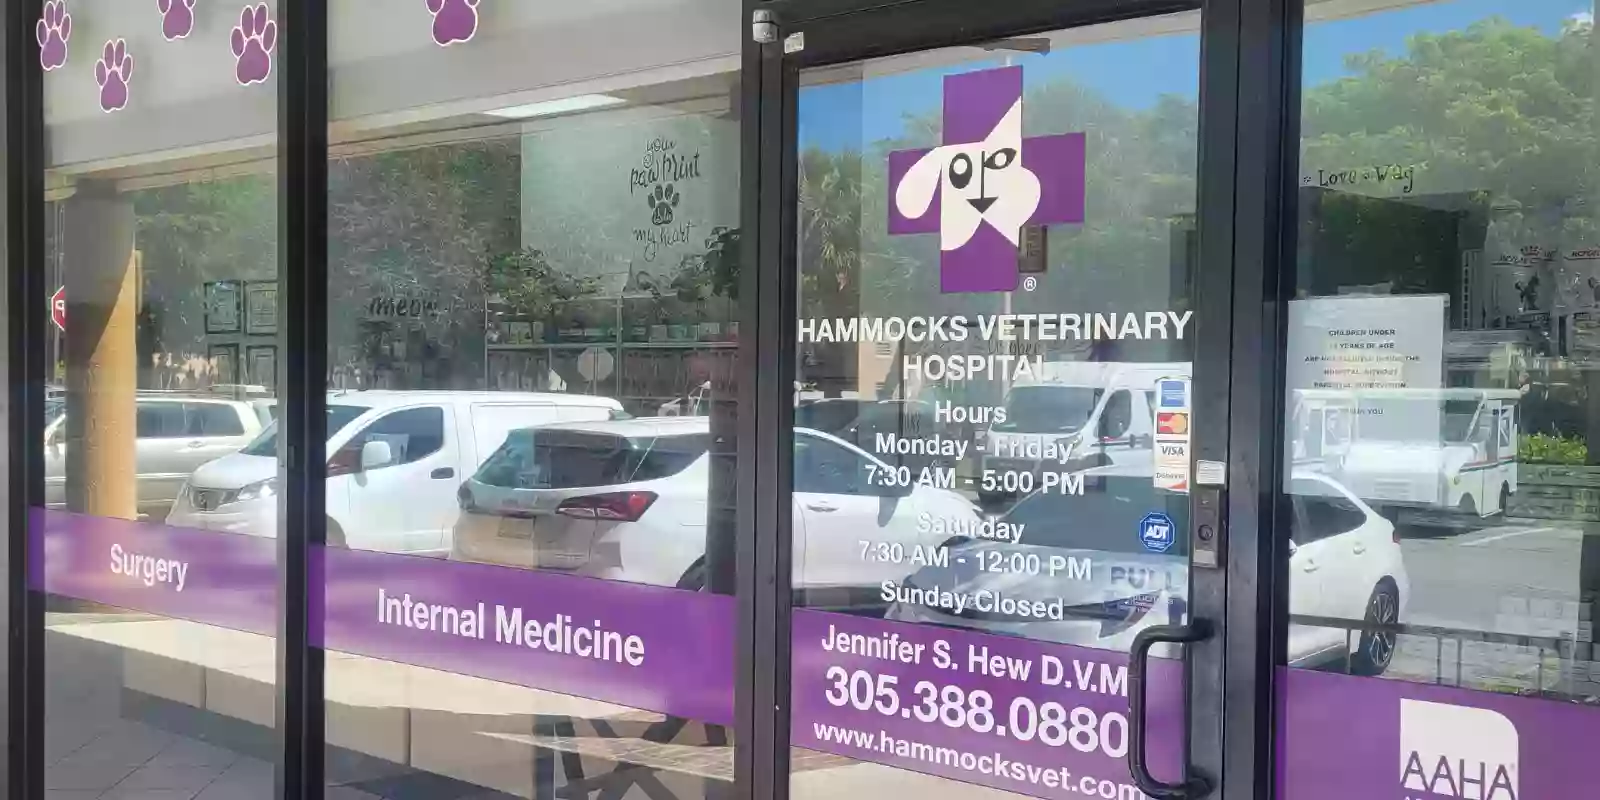 Hammocks Veterinary Hospital